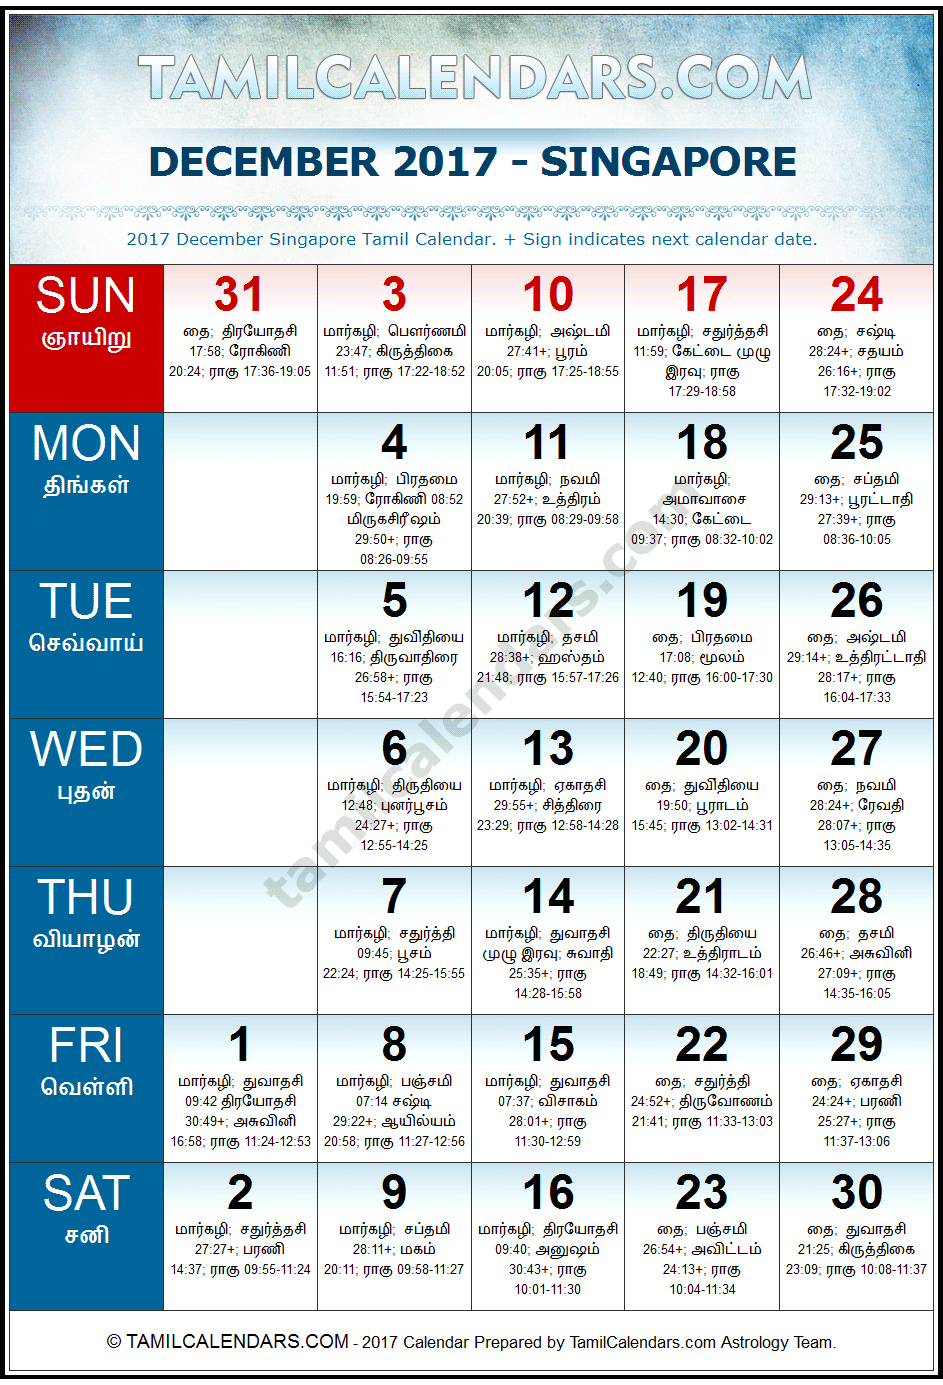 December 2017 Tamil Calendar for Singapore